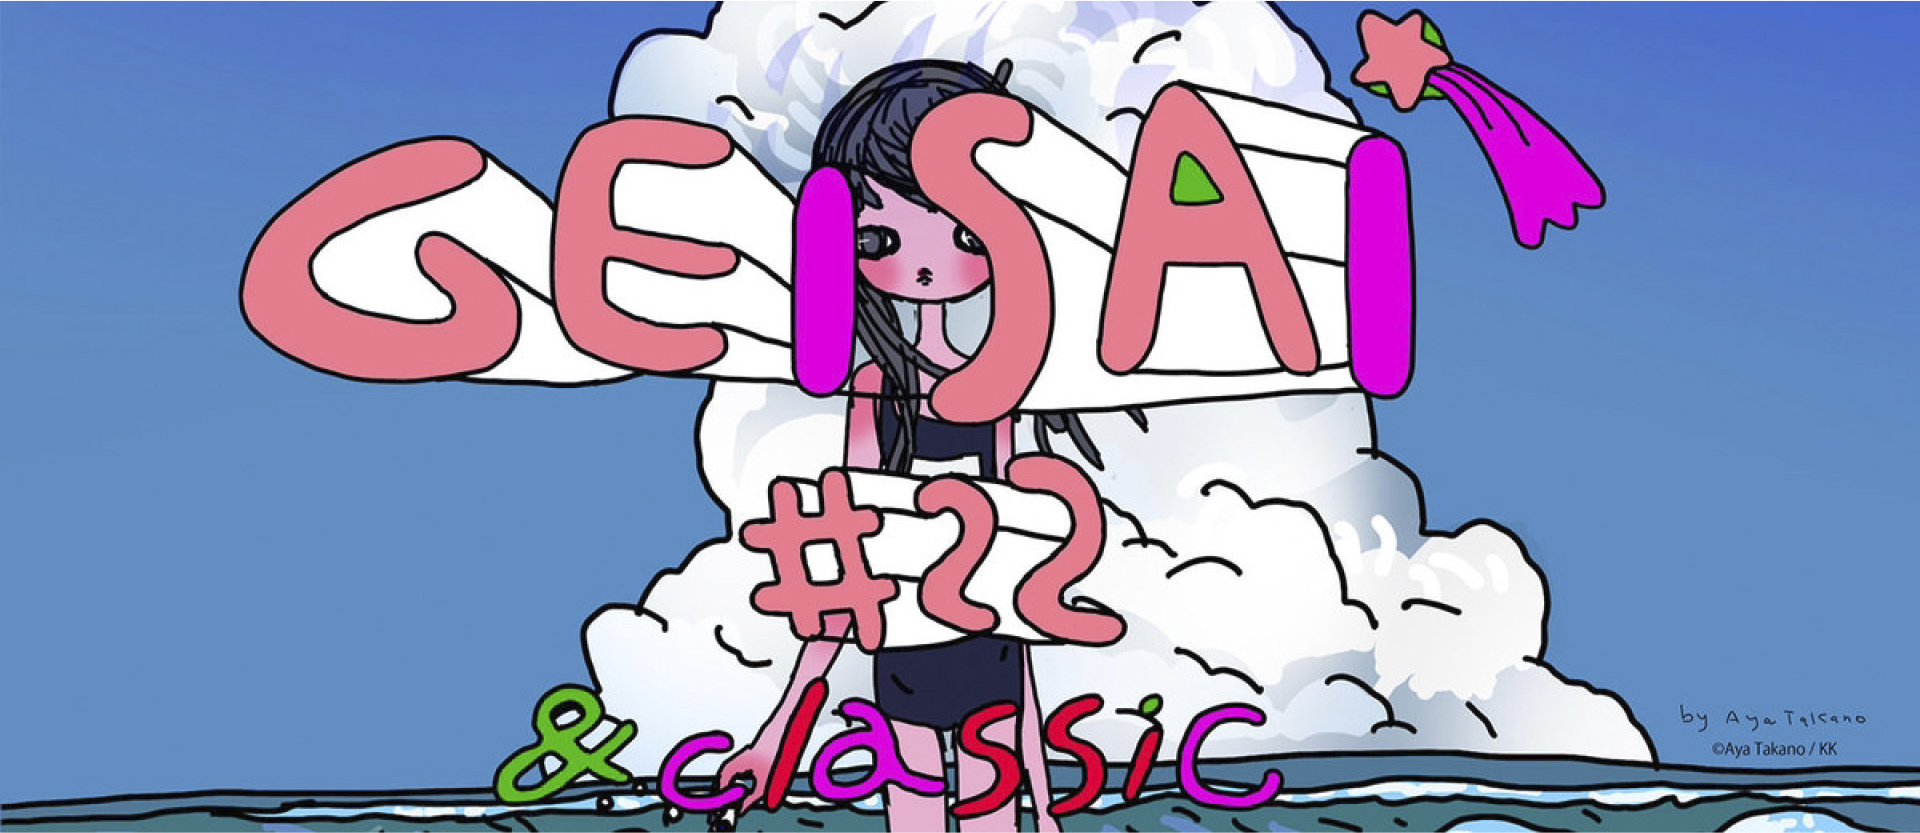 GEISAI #22 & classic